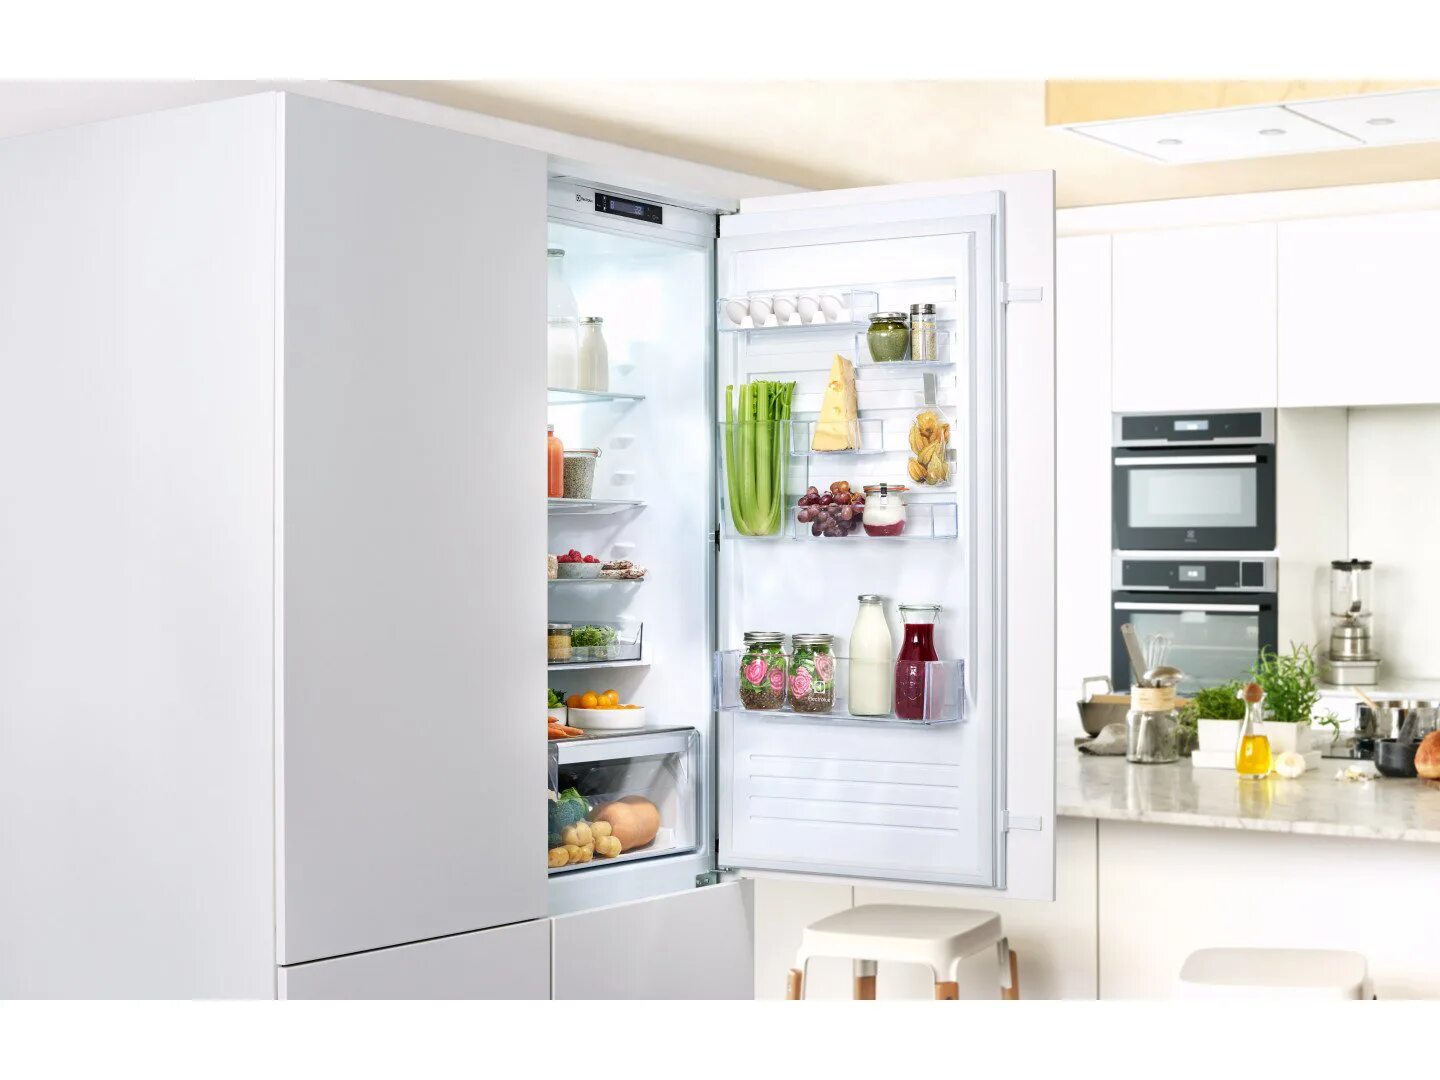 Чем отличается холодильник. Встраиваемый холодильник Electrolux enn3074efw. Встроенный холодильник Электролюкс. Встраиваемый холодильник Электролюкс. Встраиваемый холодильник Electrolux enn.